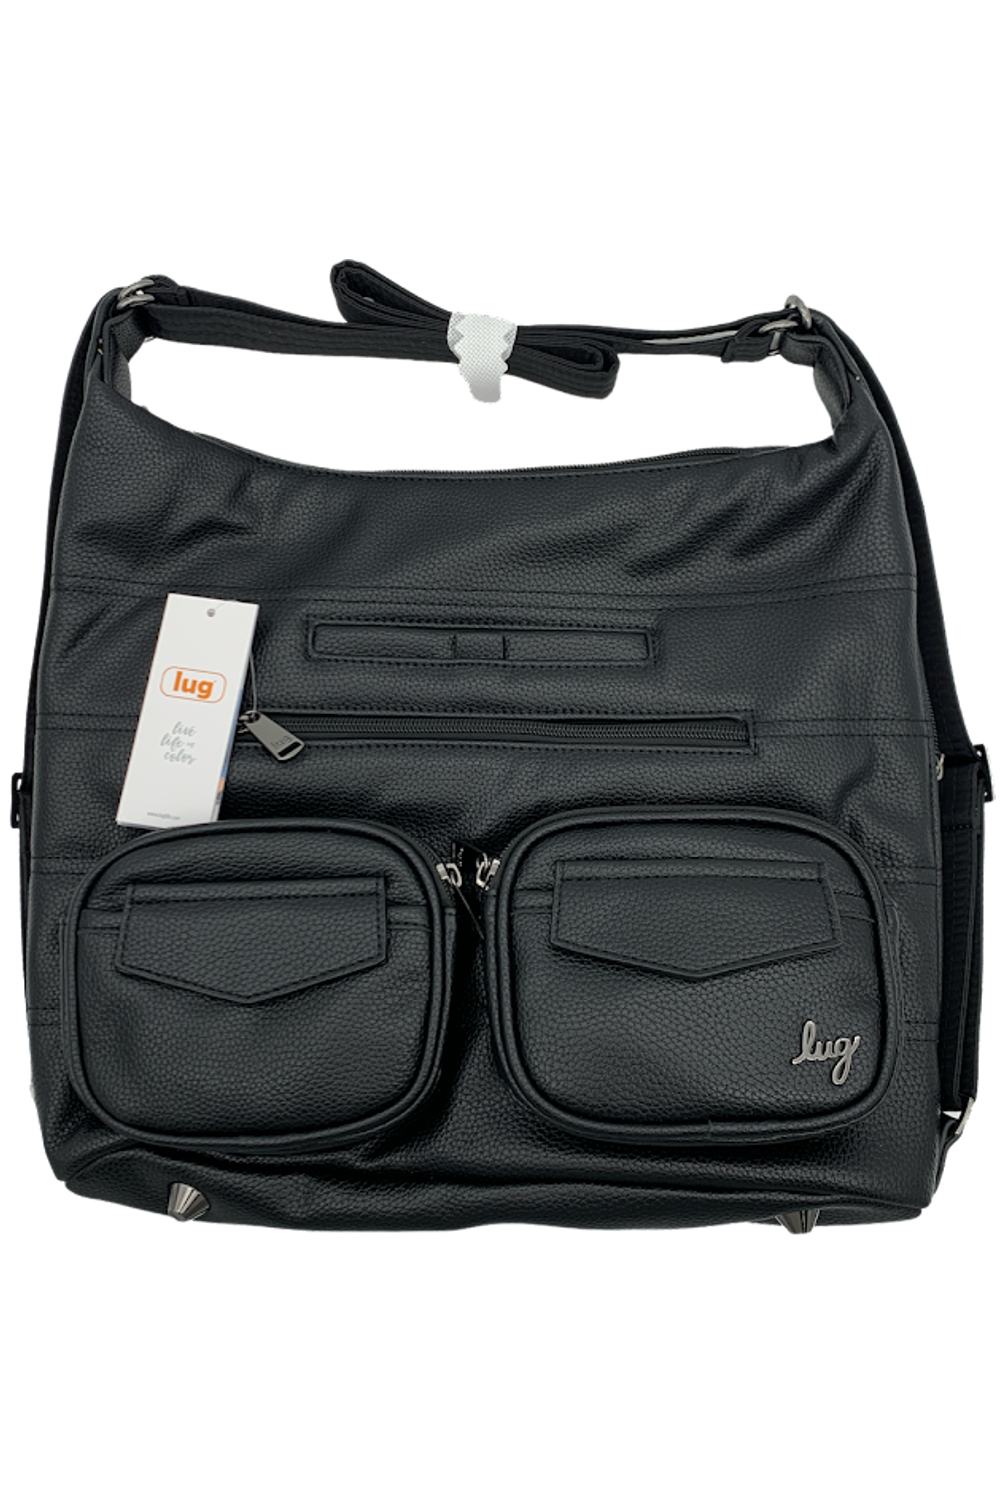 Zipliner Classic VL Convertible Hobo Bag